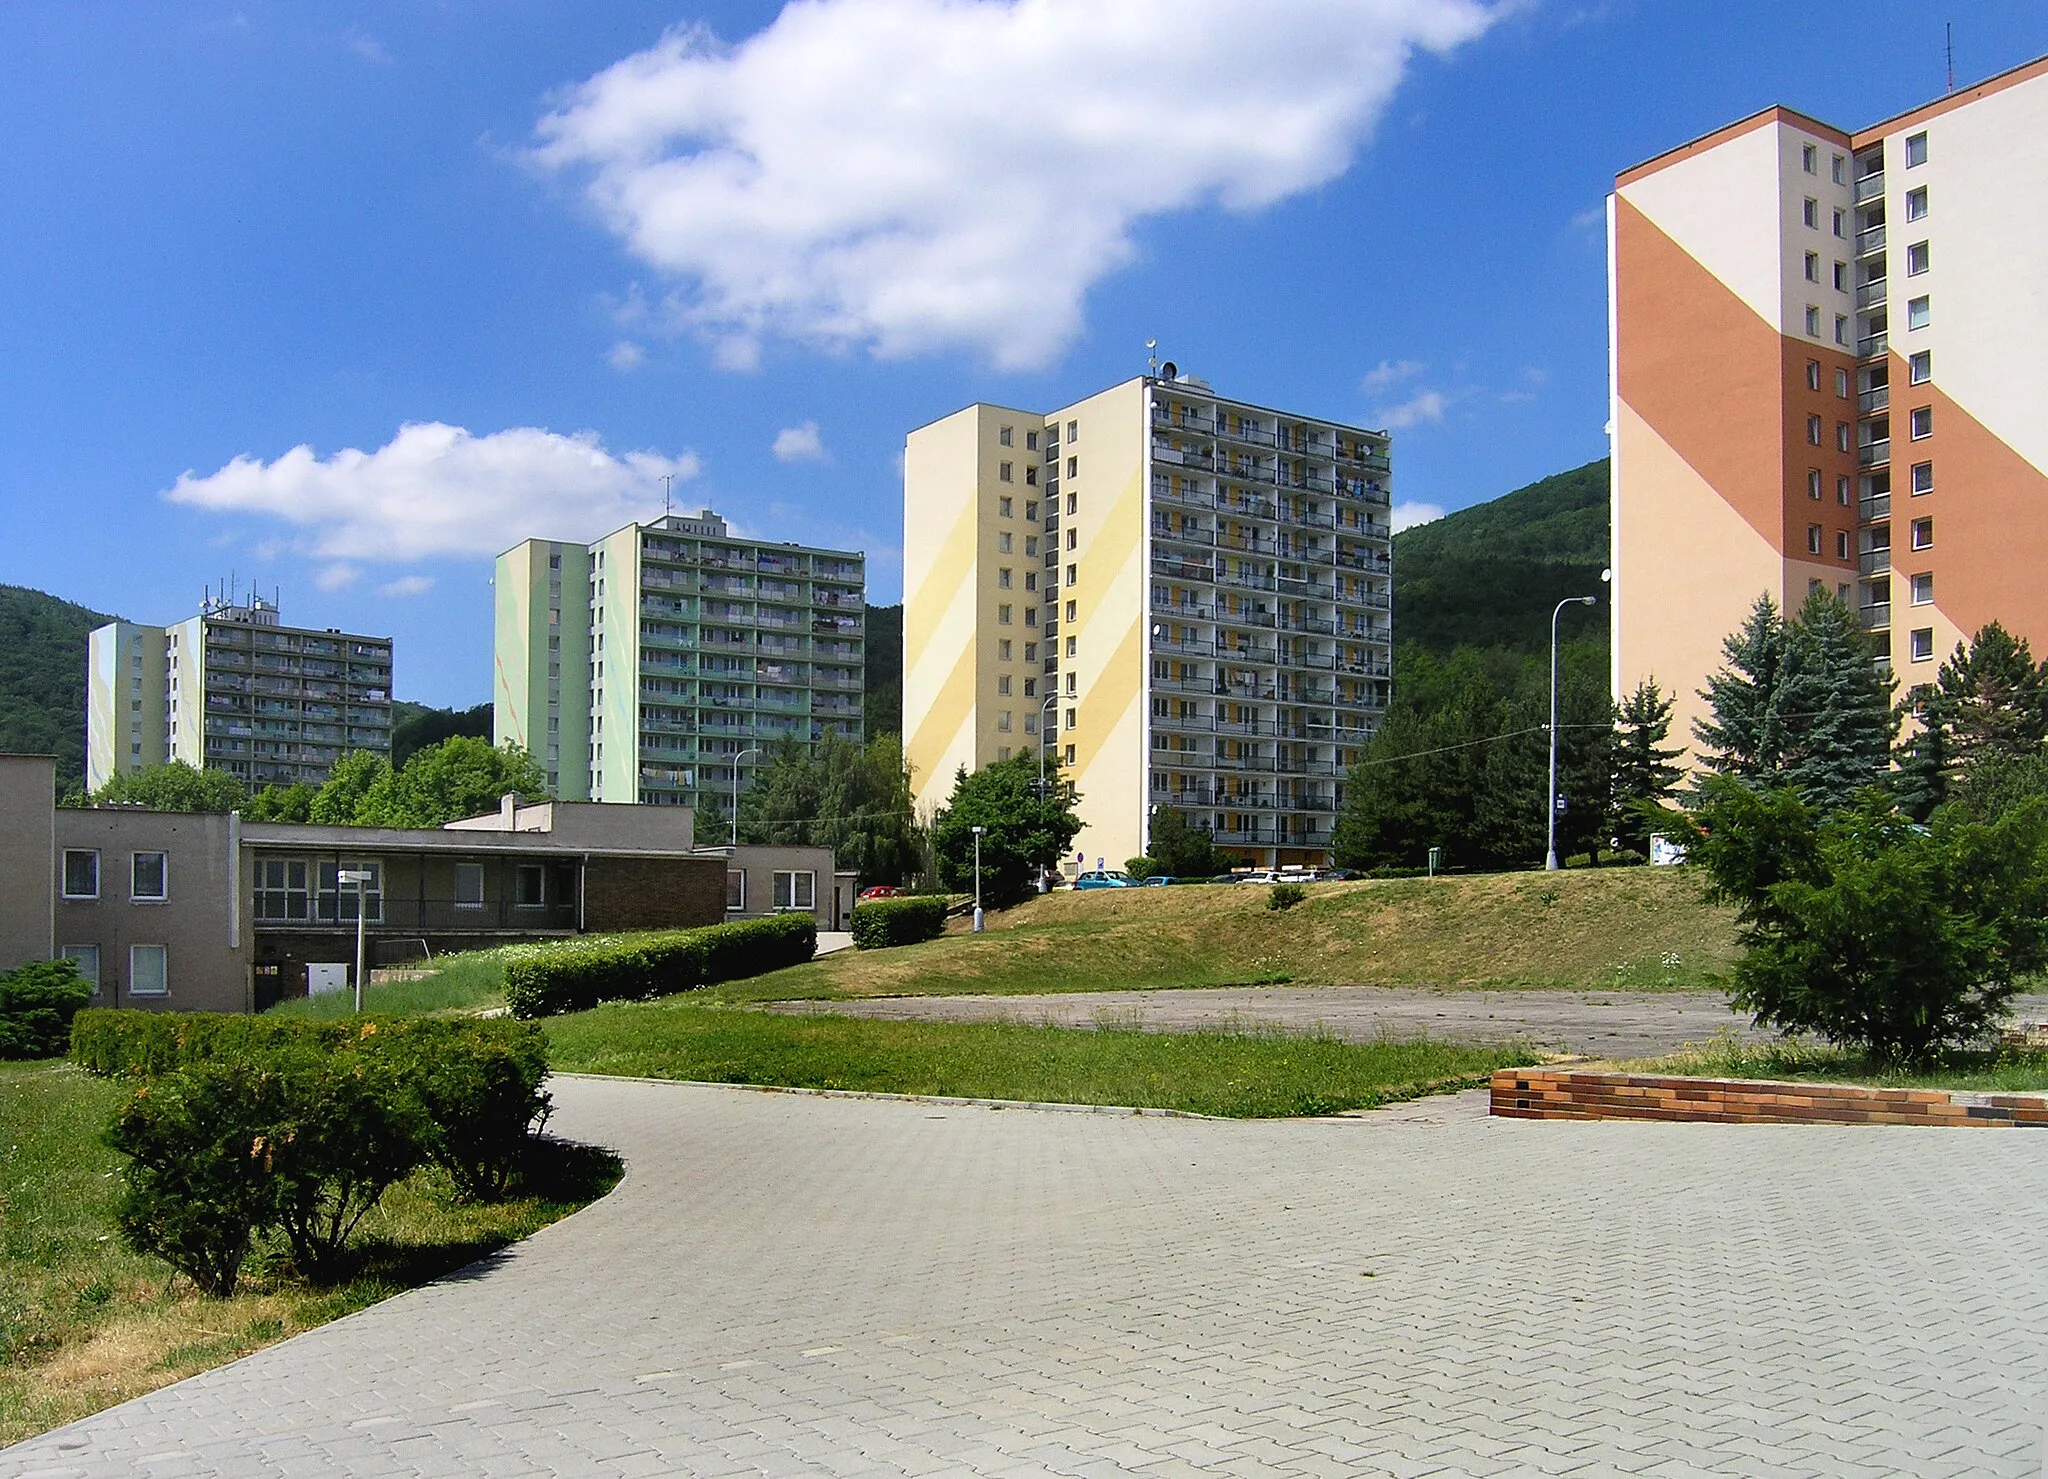 Photo showing: Housing estate by Hrdlovská street in Osek town, Czech Republic